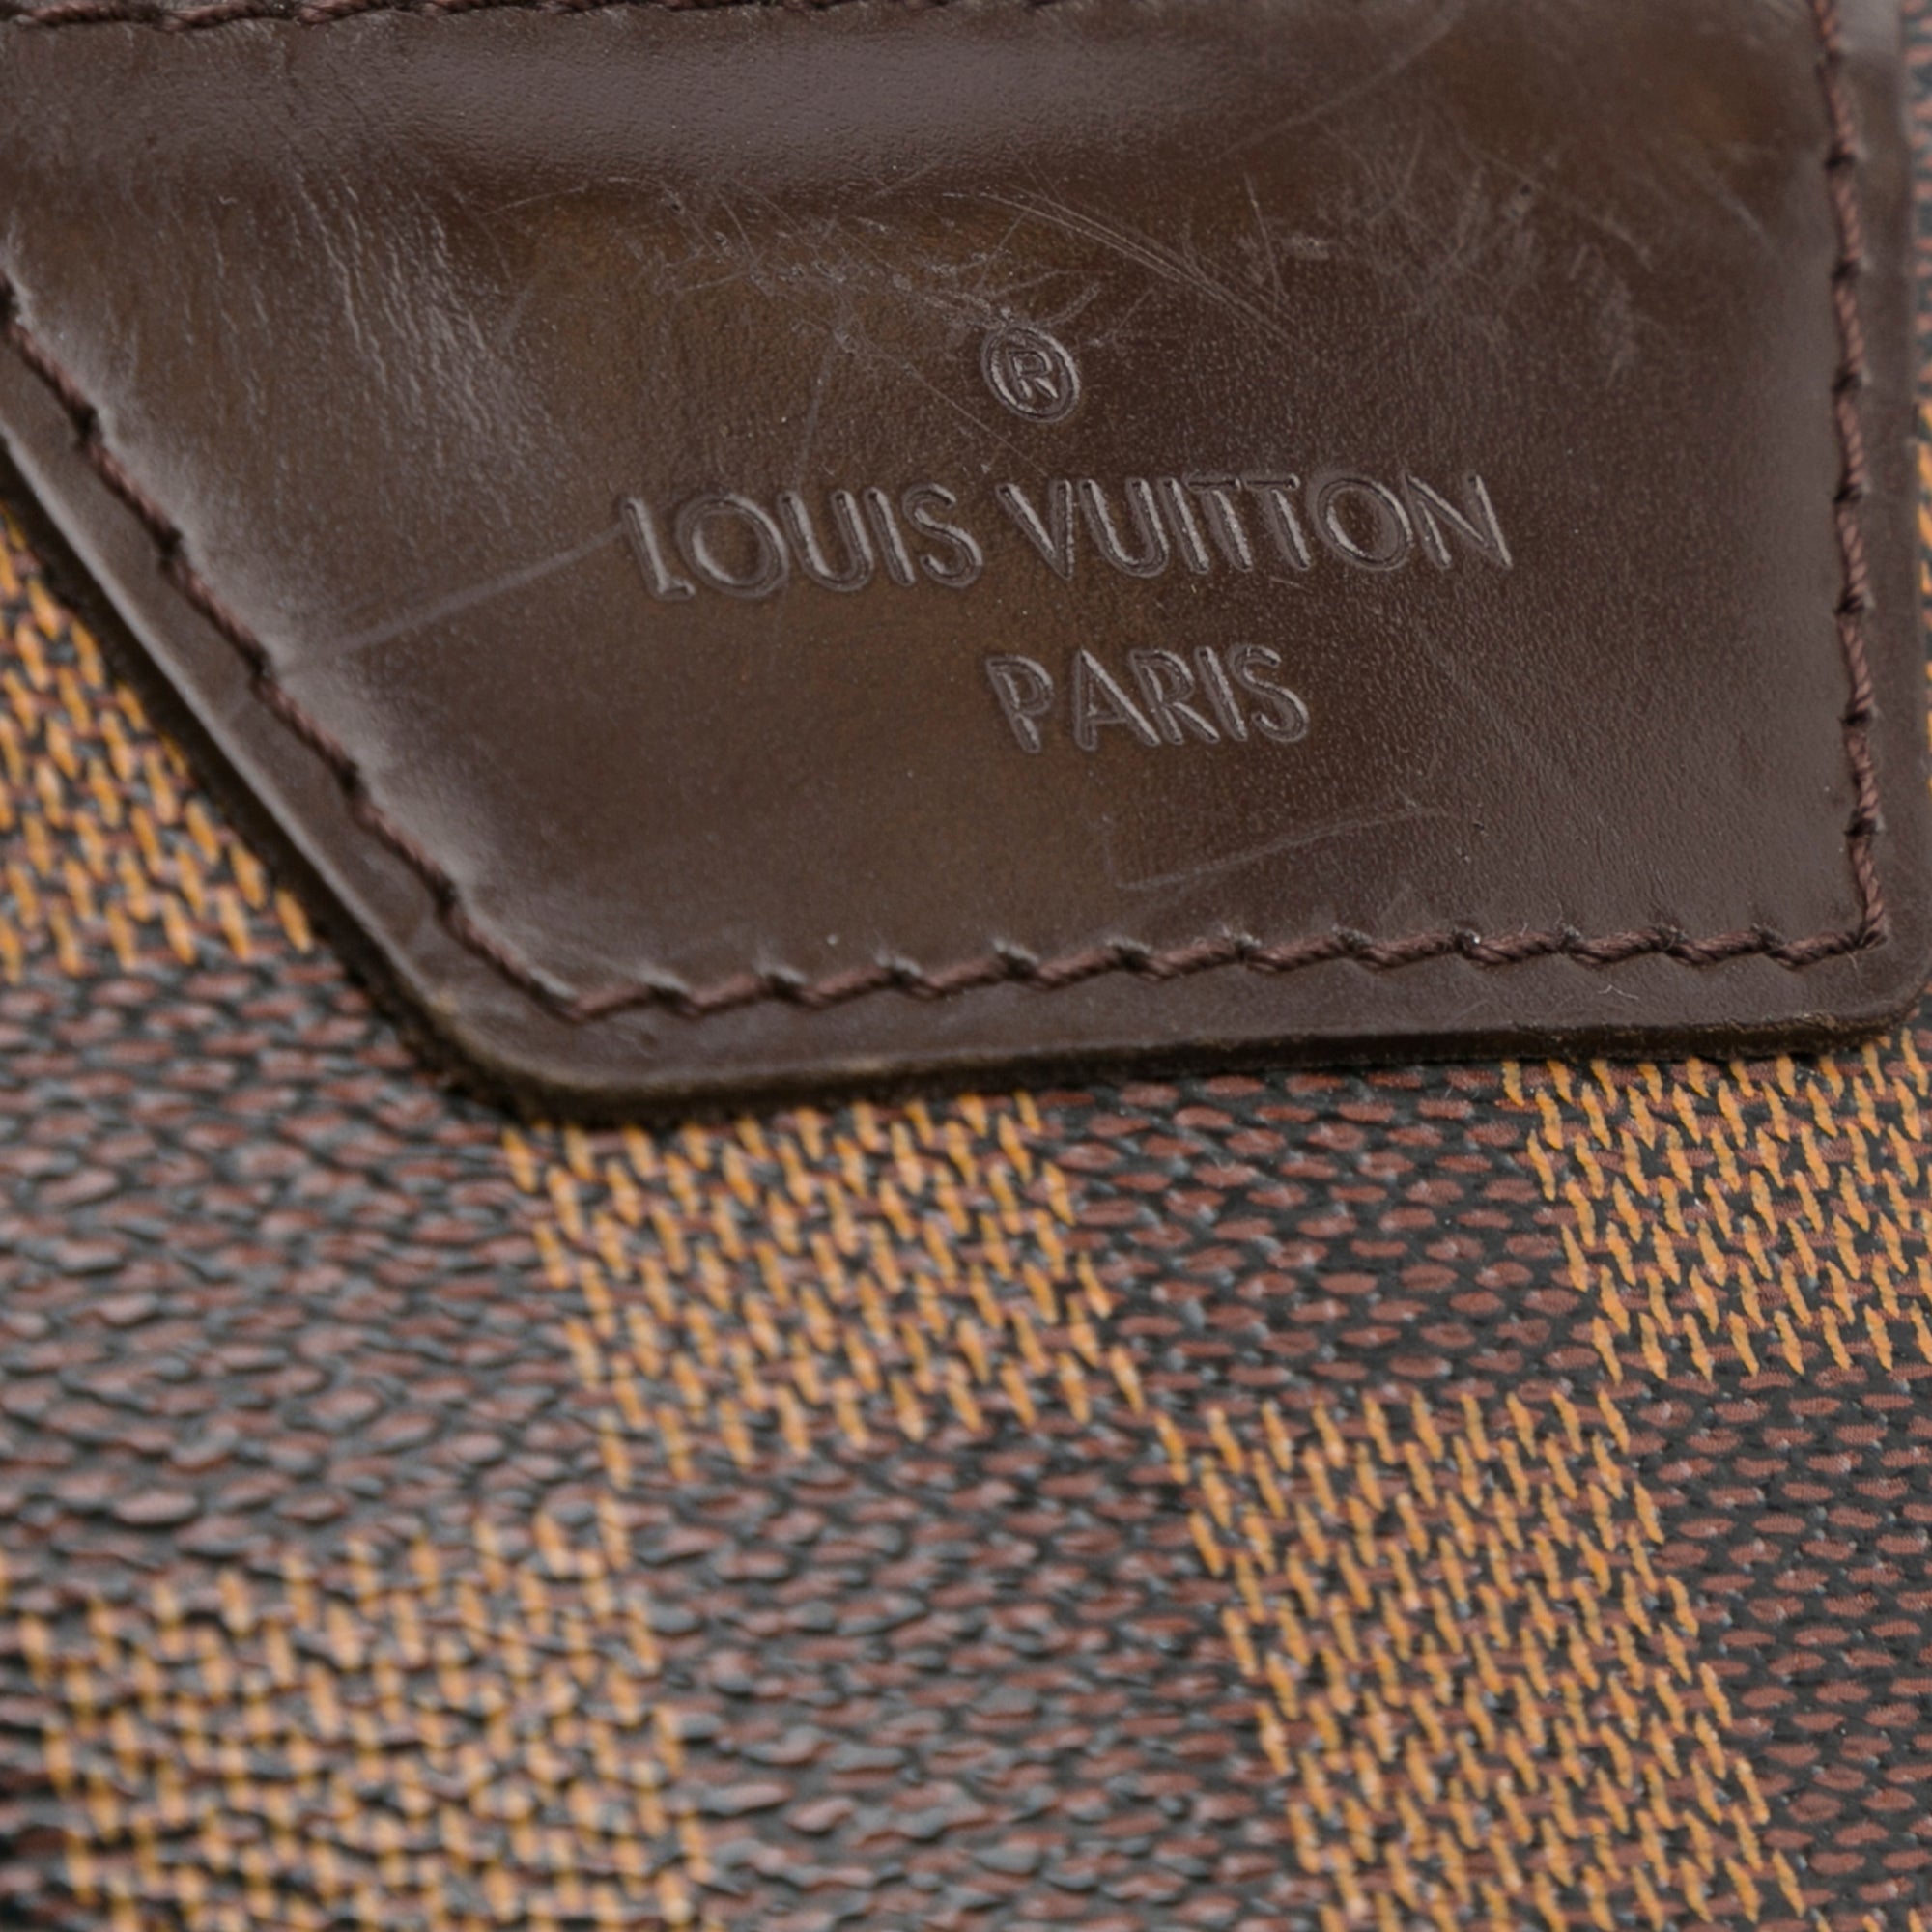 Authentic Louis Vuitton Damier Ebene Canvas Rivington Cabas Tote